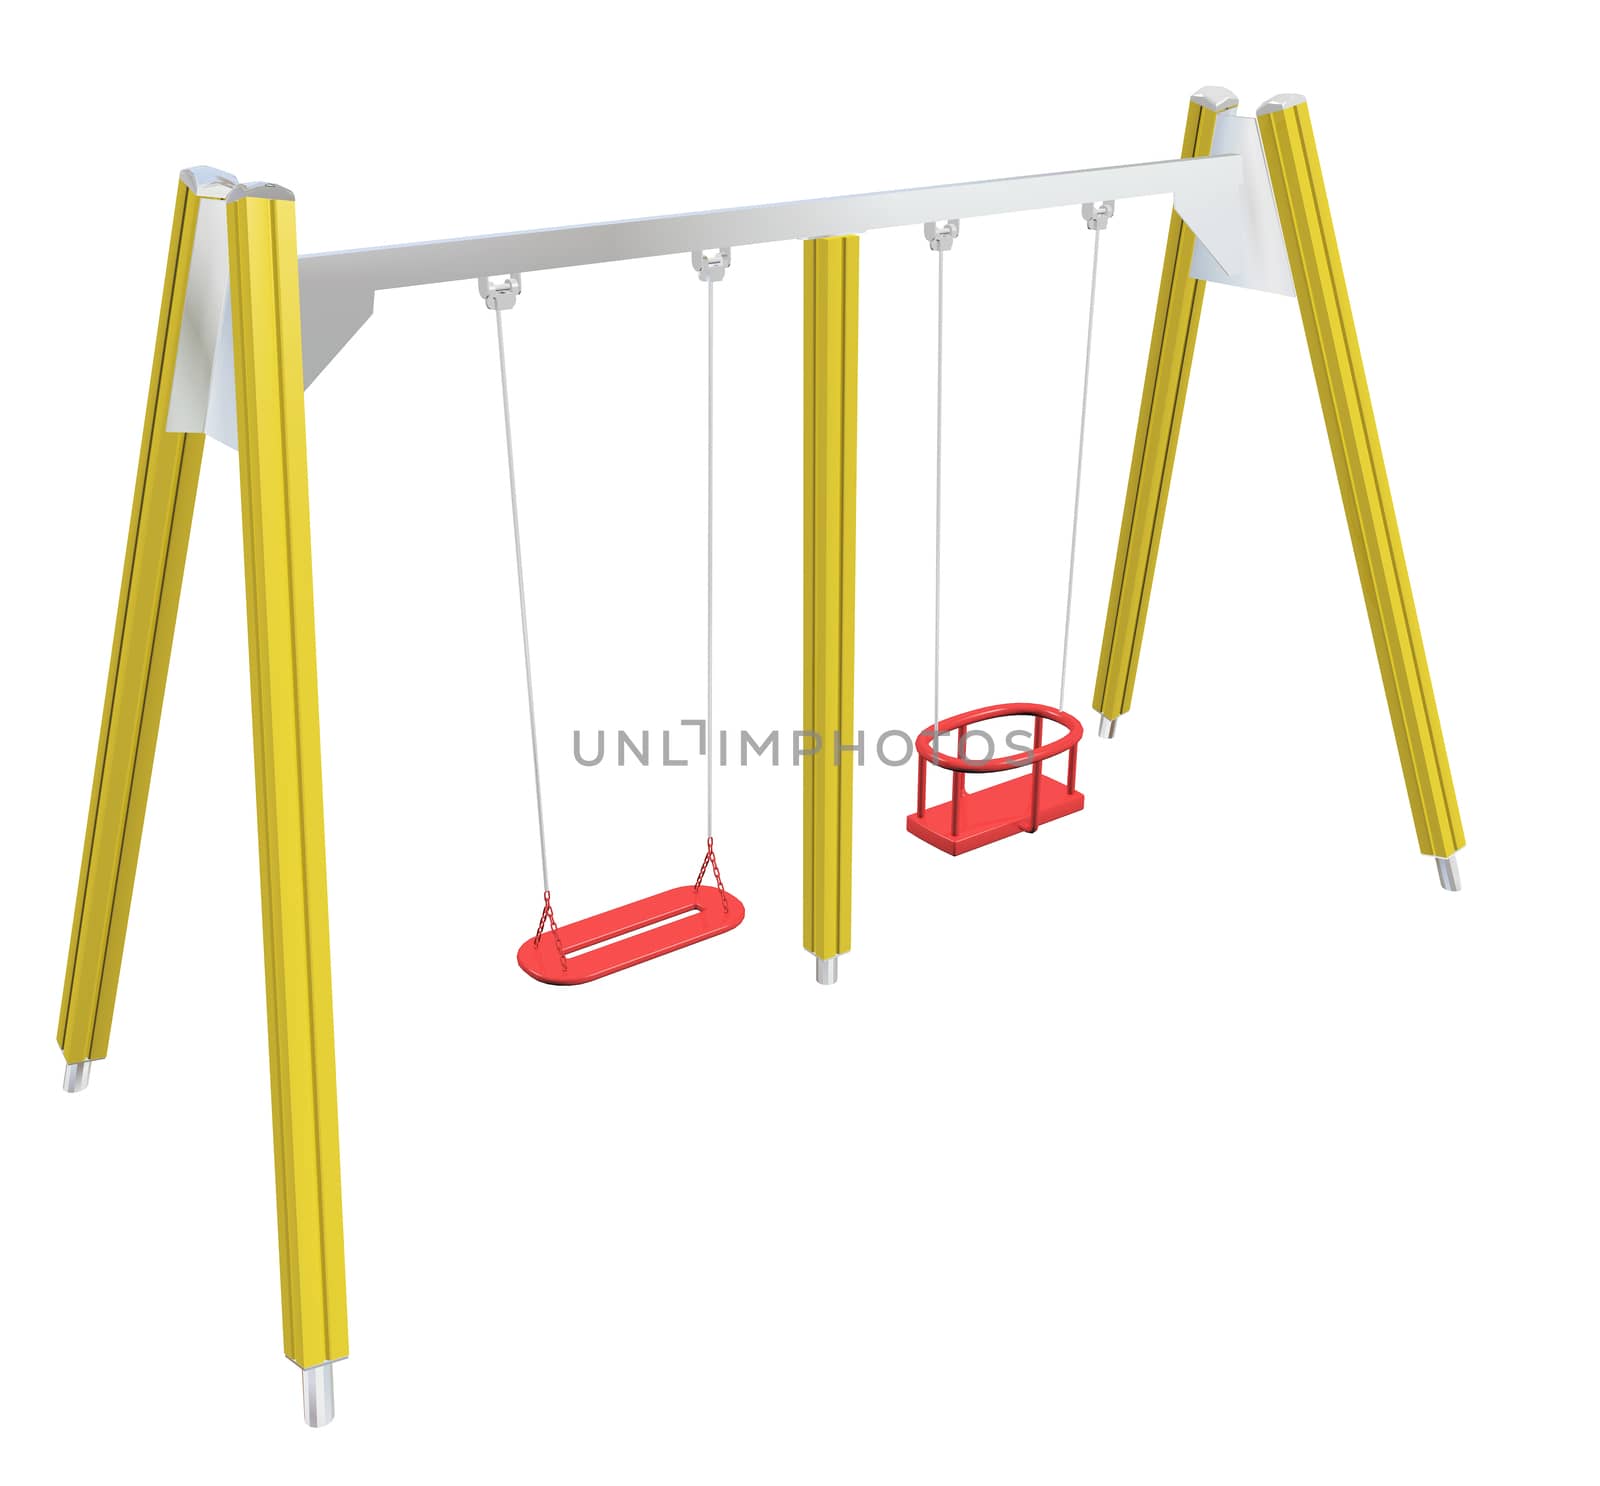 Child-safe swing, 3D illustration by Morphart